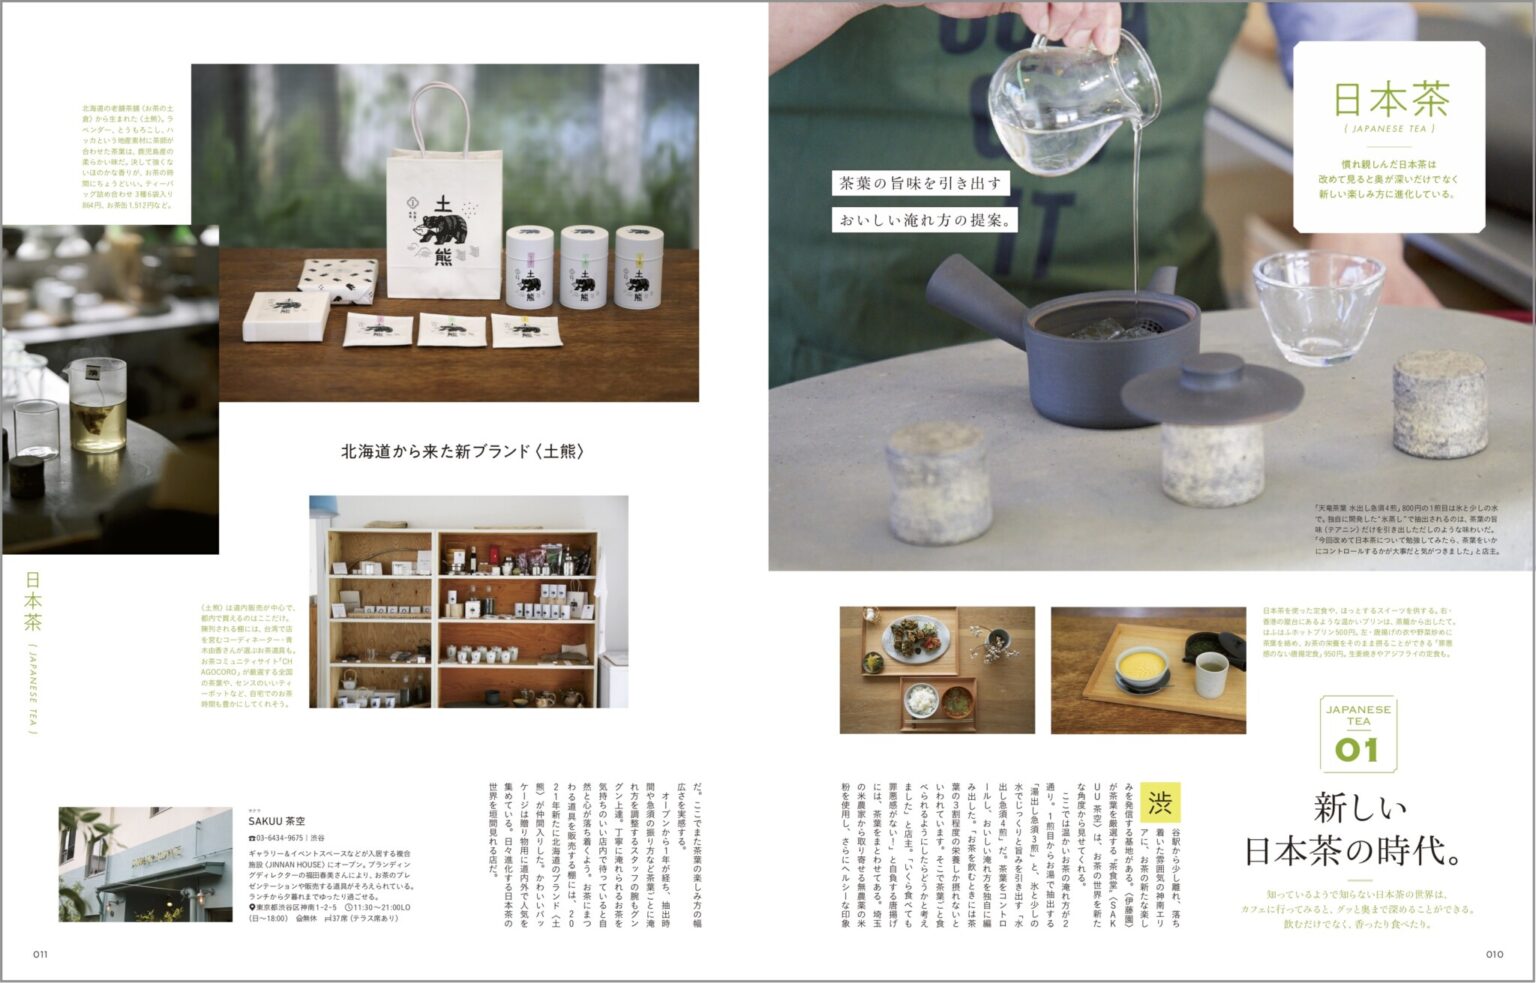 私たちが慣れ親しむ日本茶の世界。茶葉、道具、おやつなど、日々進化しながら新しい楽しみ方を教えてくれます。